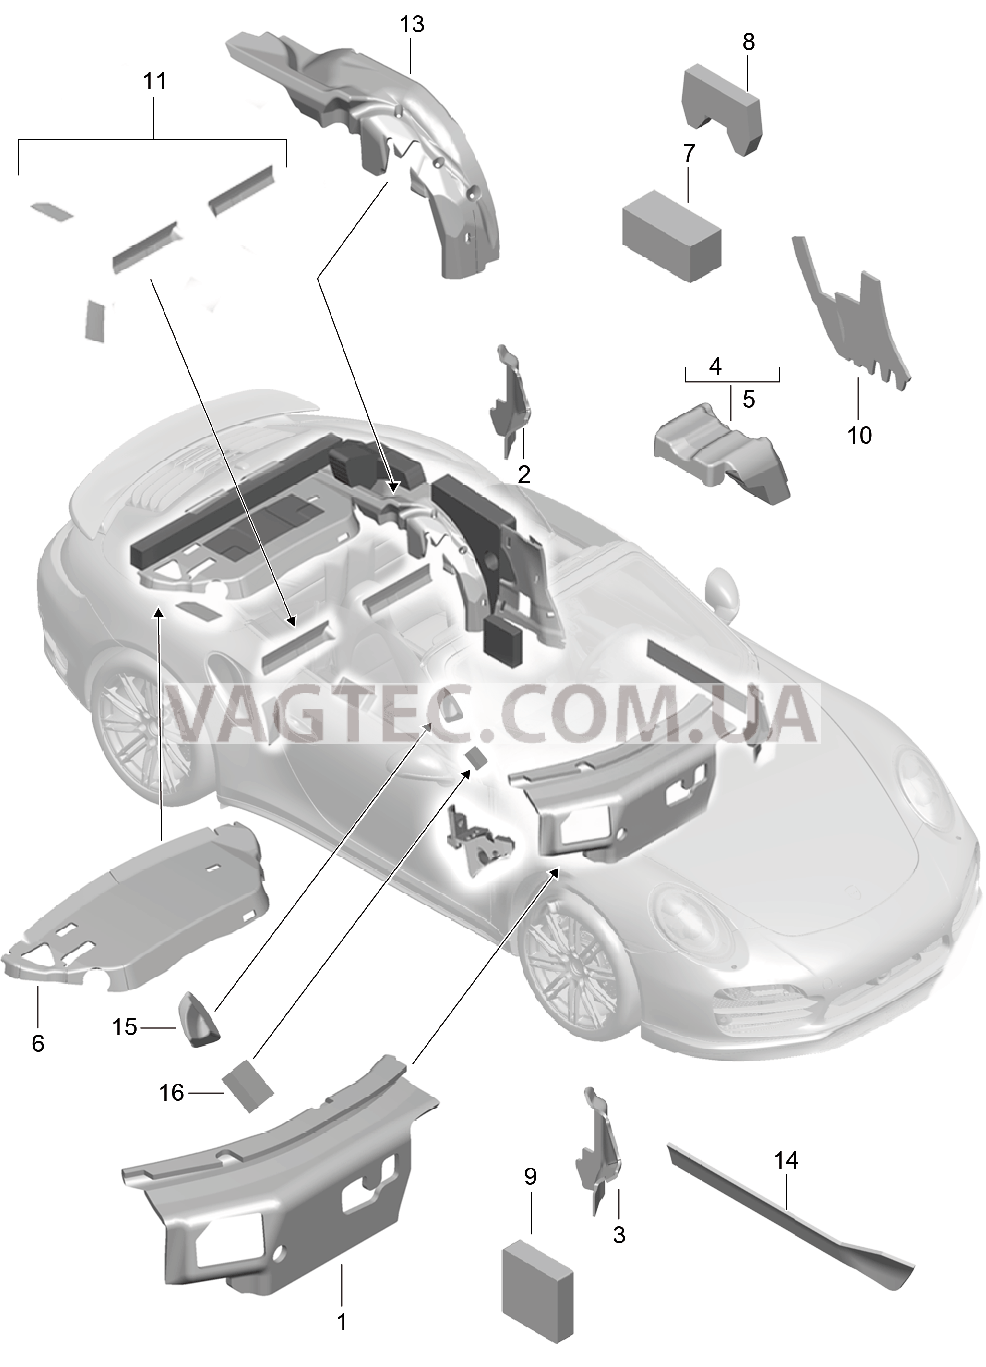 807-082 Кузов, Звукоизоляция 1
						
						CABRIO для PORSCHE Porsche991Turbo 2014-2017USA